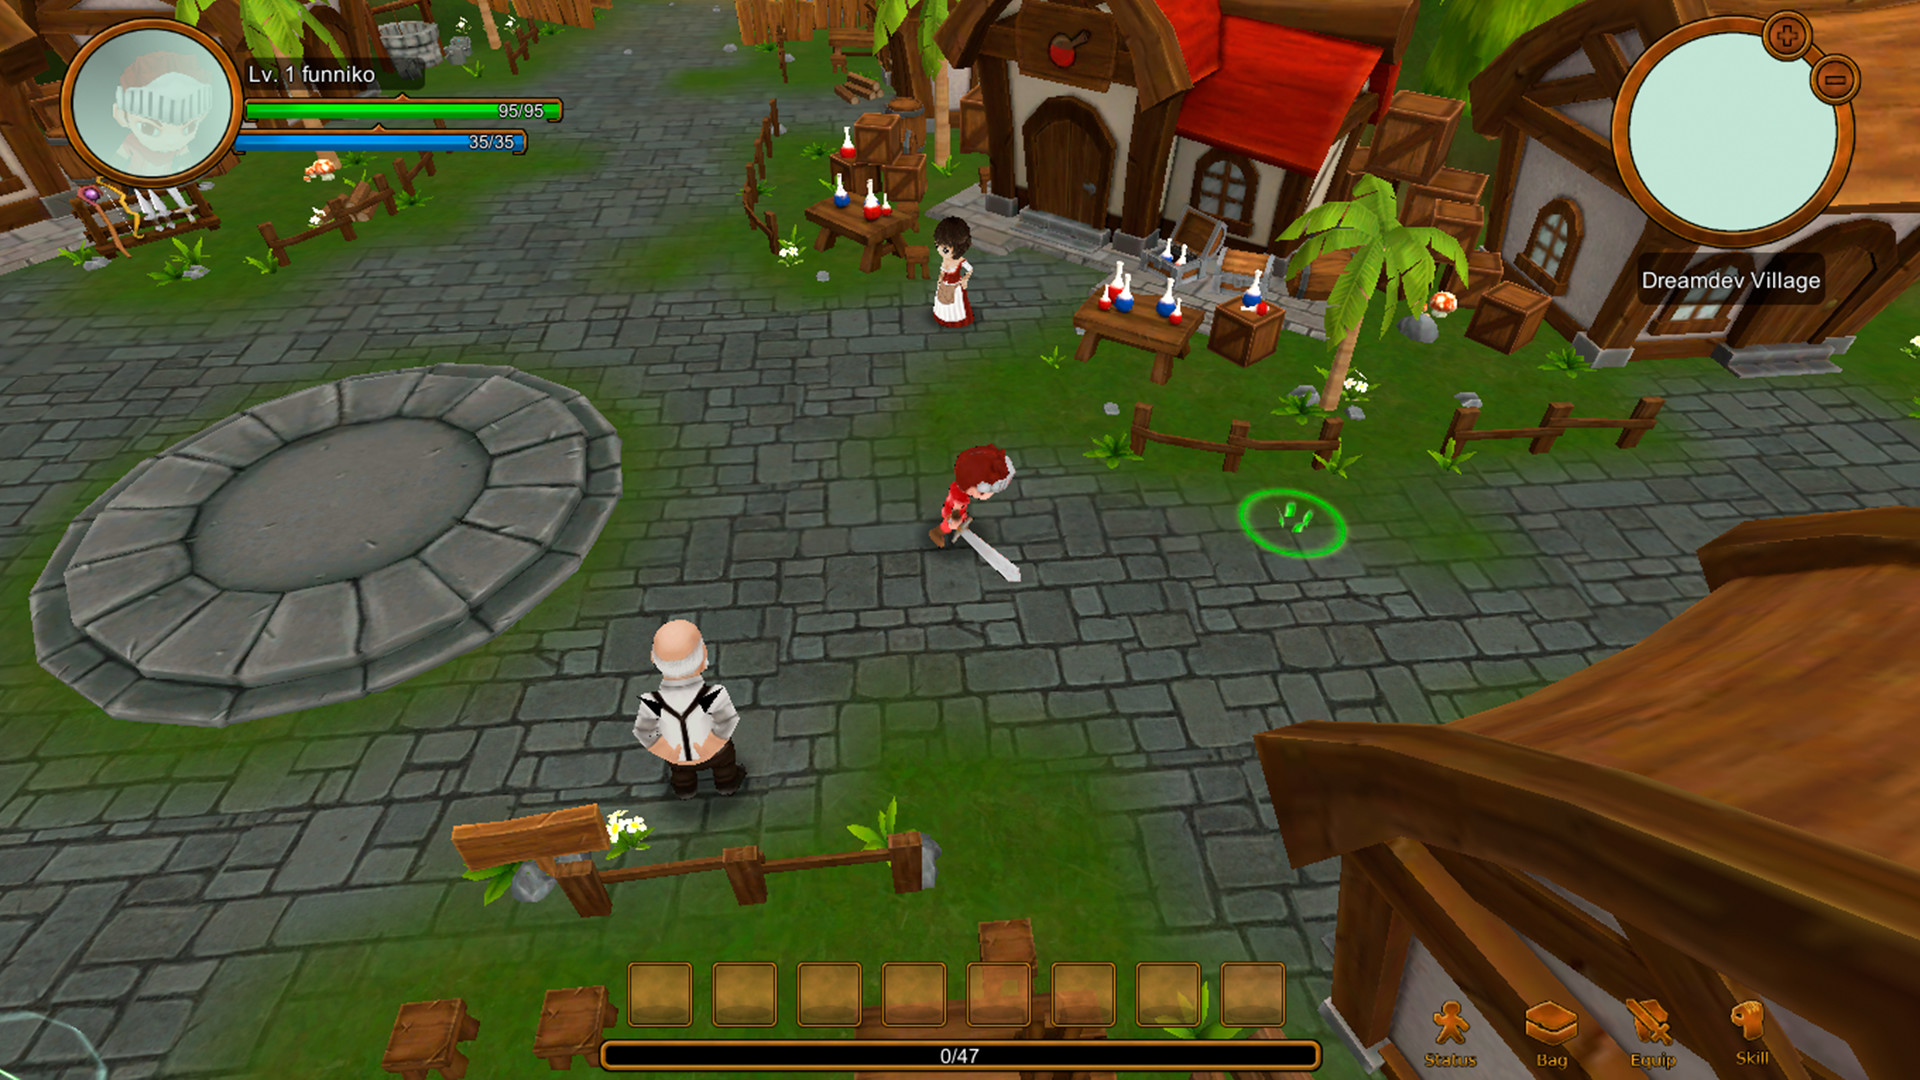 Village RPG Free Download